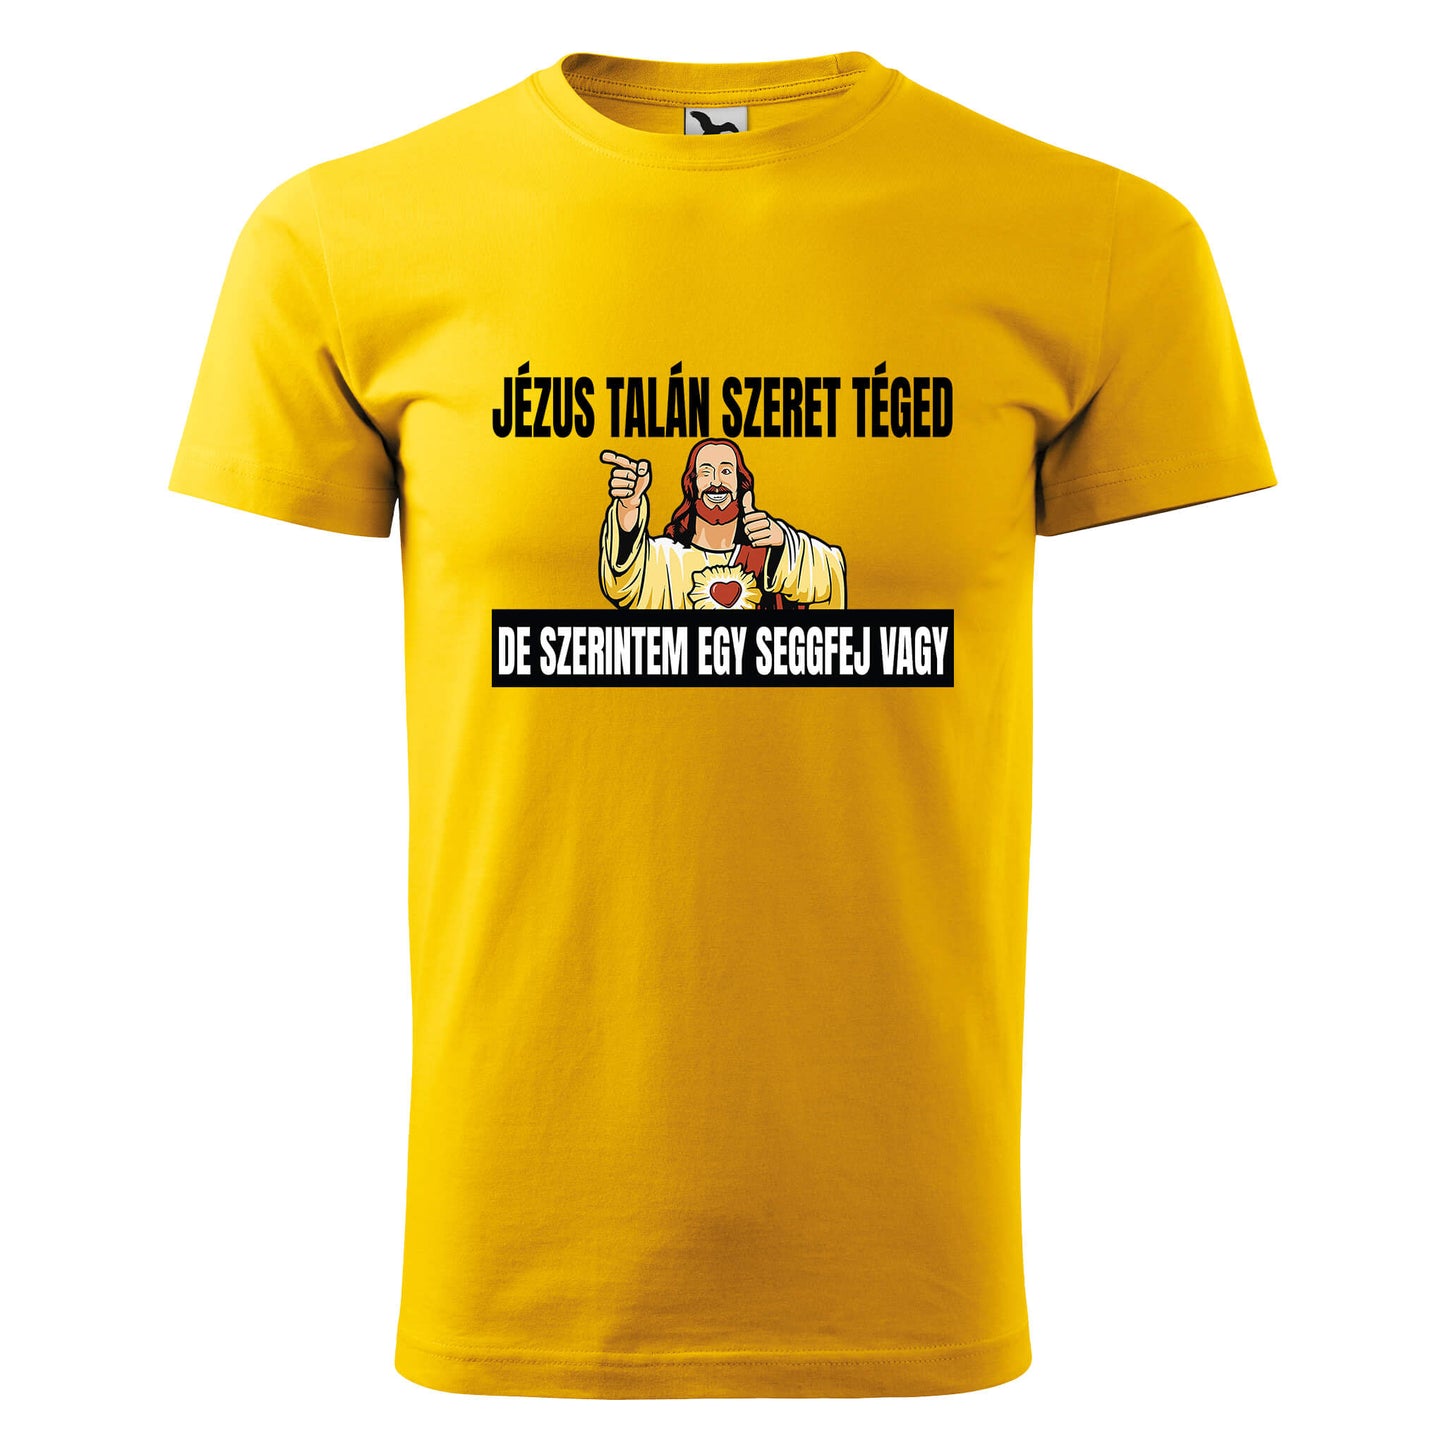 Jezus talan szeret teged t-shirt - rvdesignprint